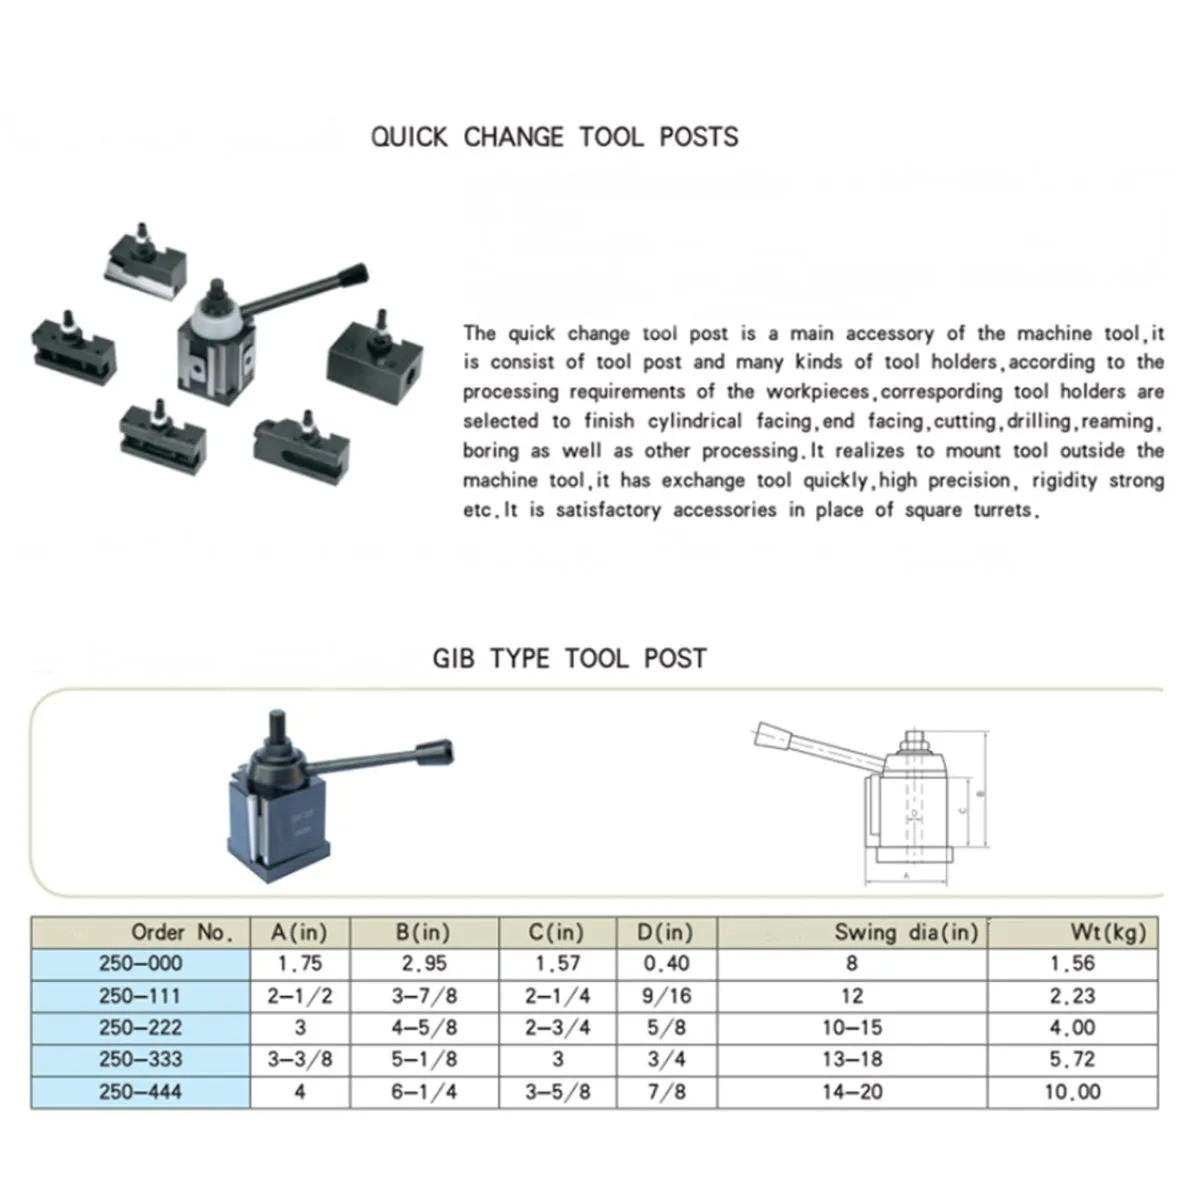 Набор инструментов для быстрой смены, DMC-250-000, форма, тип GIB, 250 001-010, держатель инструмента, поршневой замок, инструменты для токарного станка